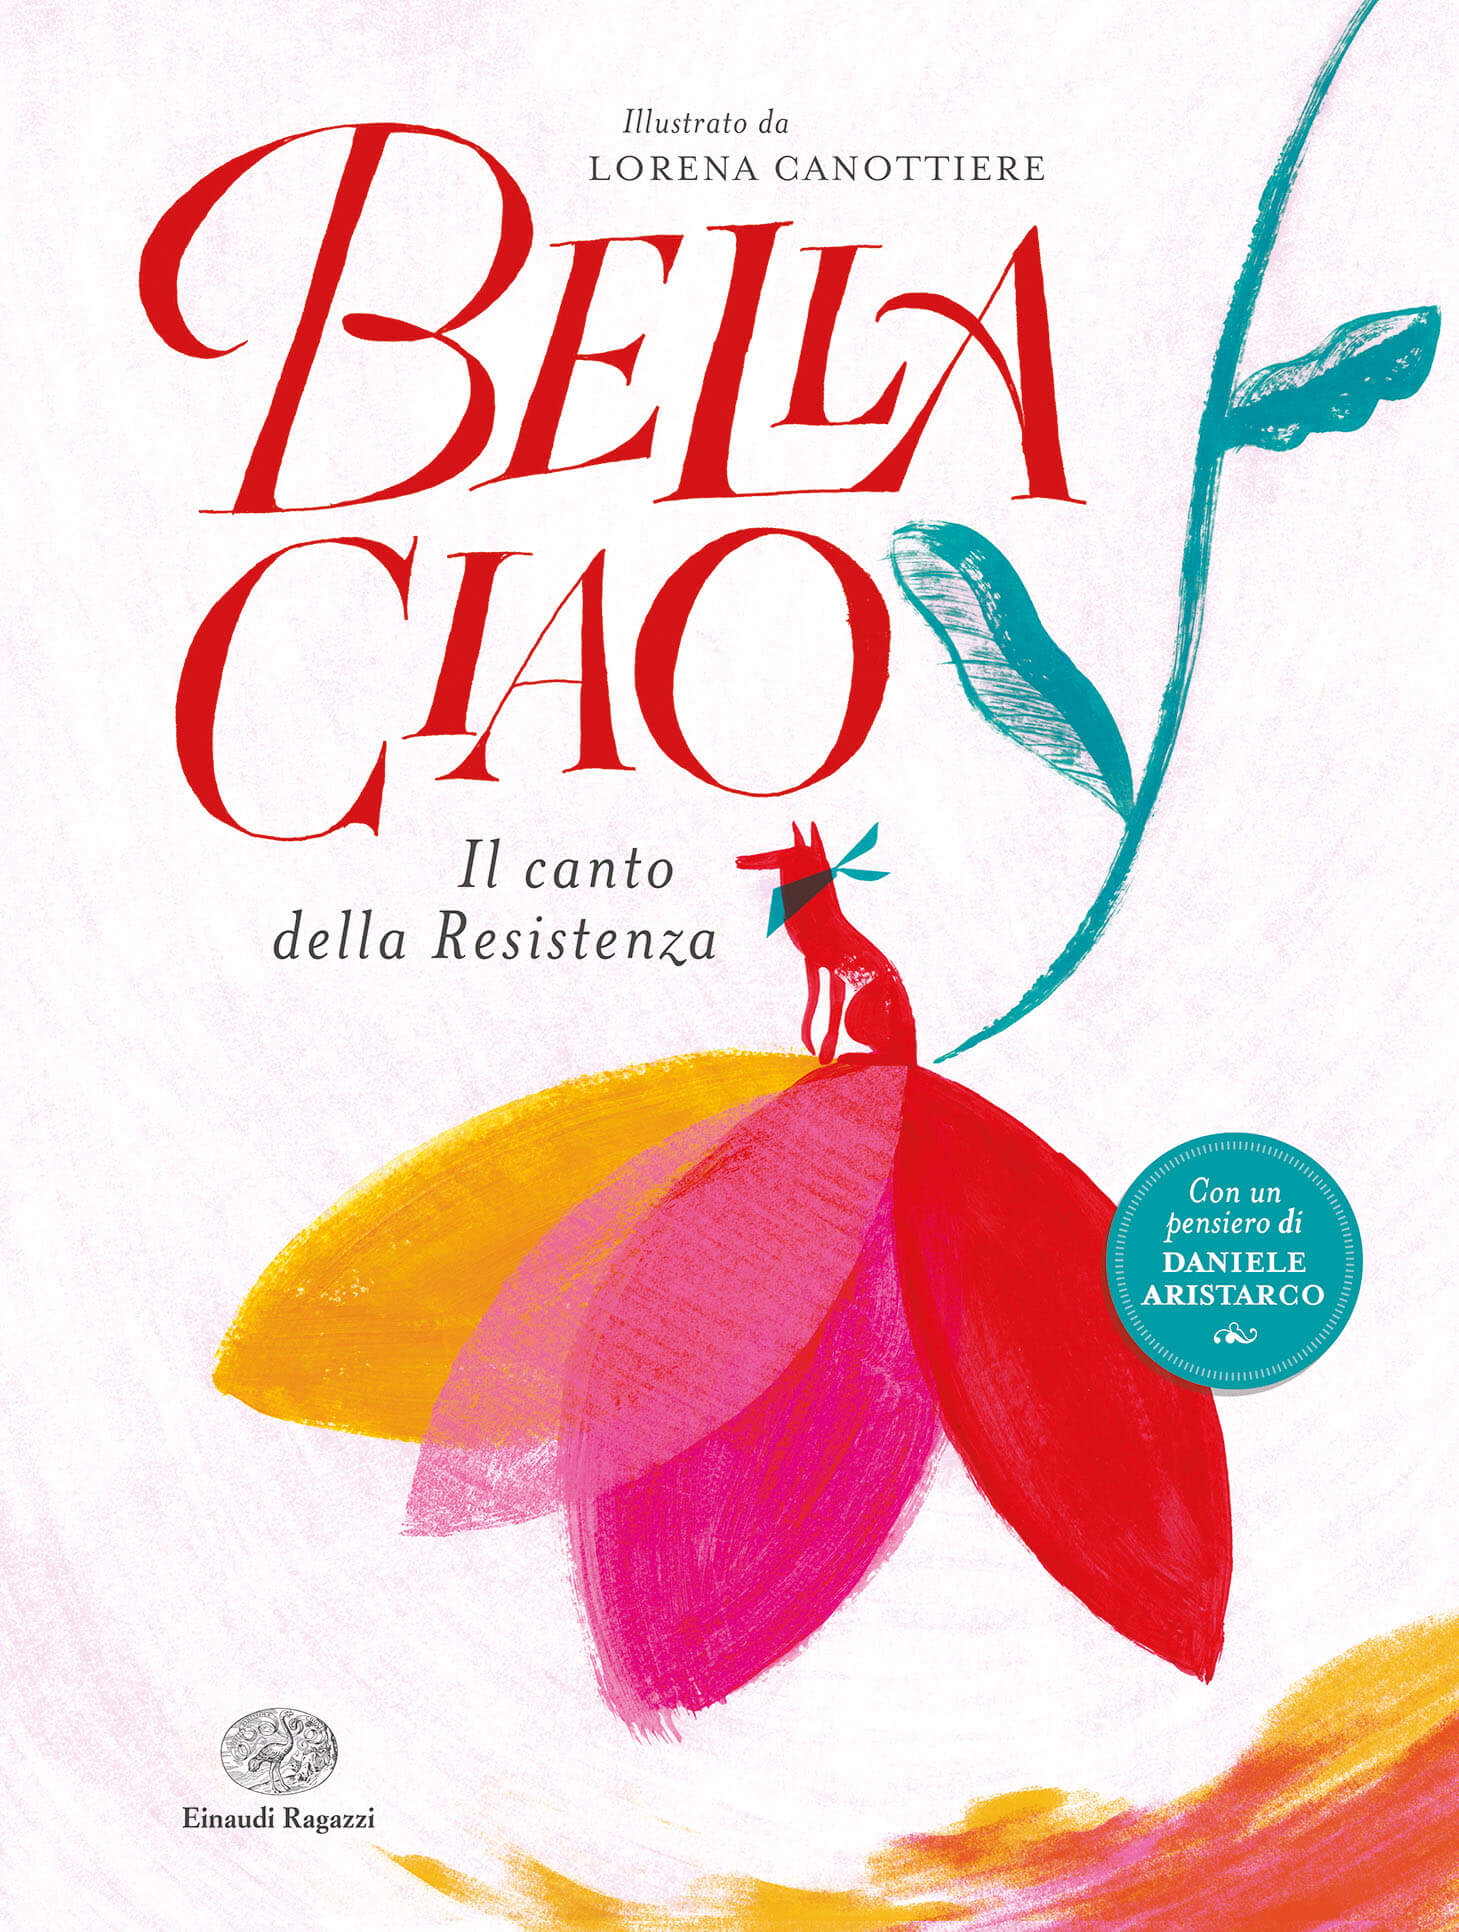 Bella Ciao: il canto della resistenza diventa un libro illustrato